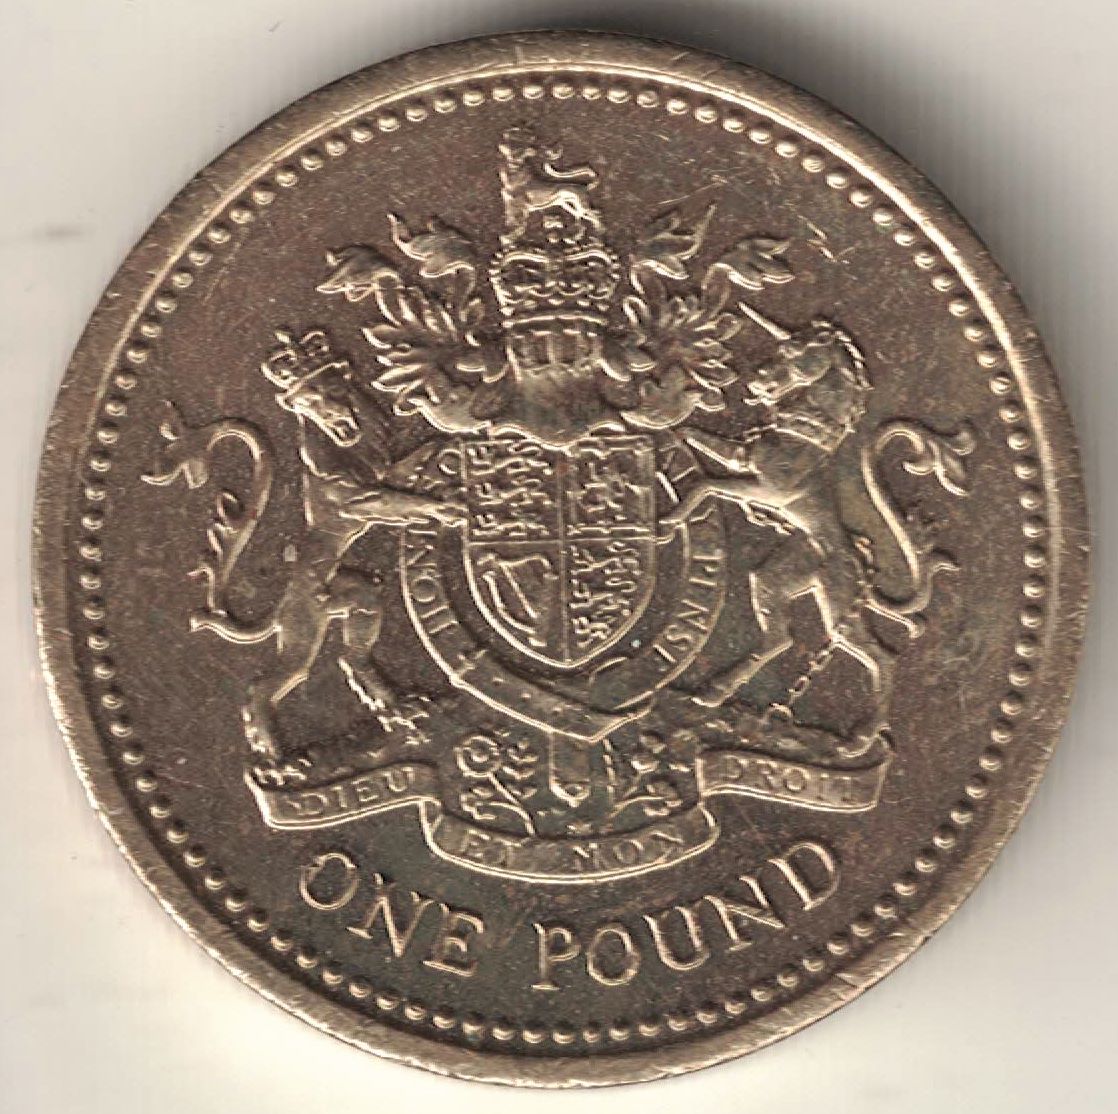 British 1 Pound Old Coin